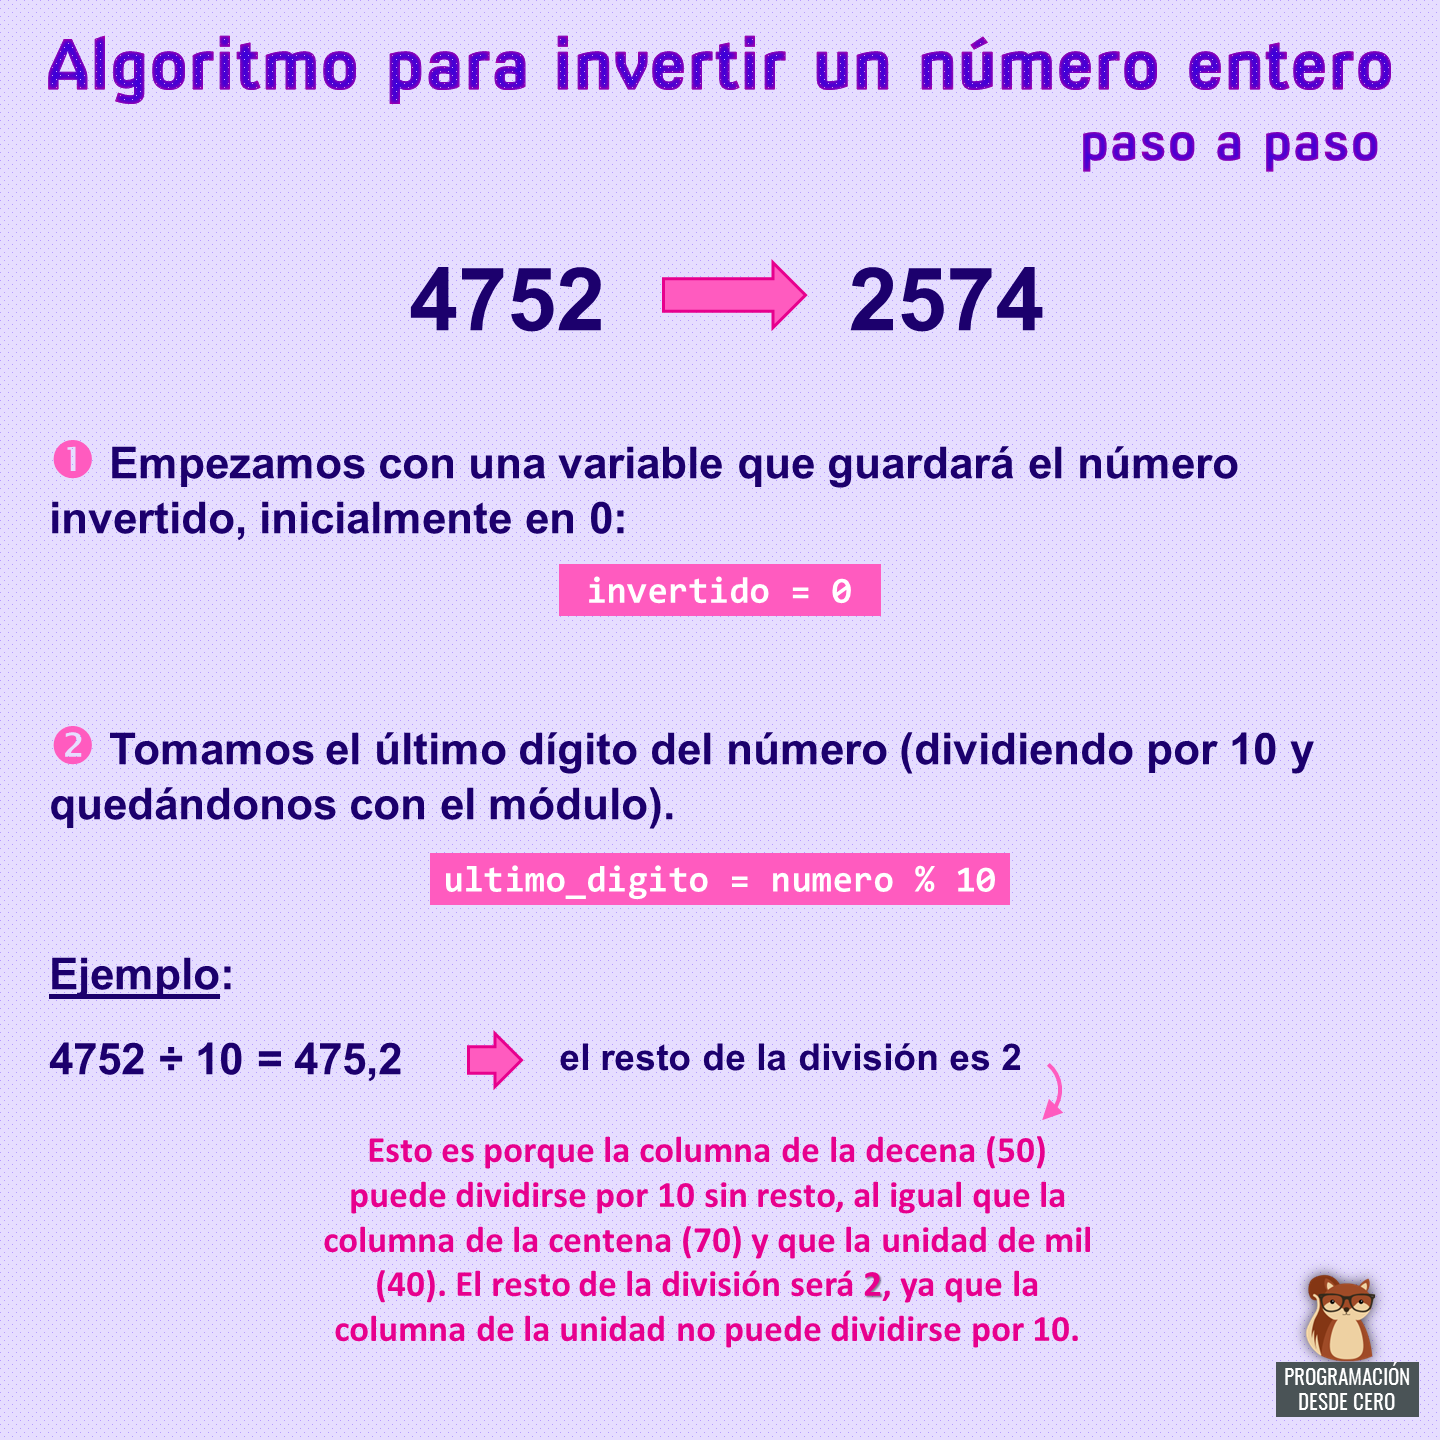 Algoritmo para invertir un numero entero, pasos 1 y 2